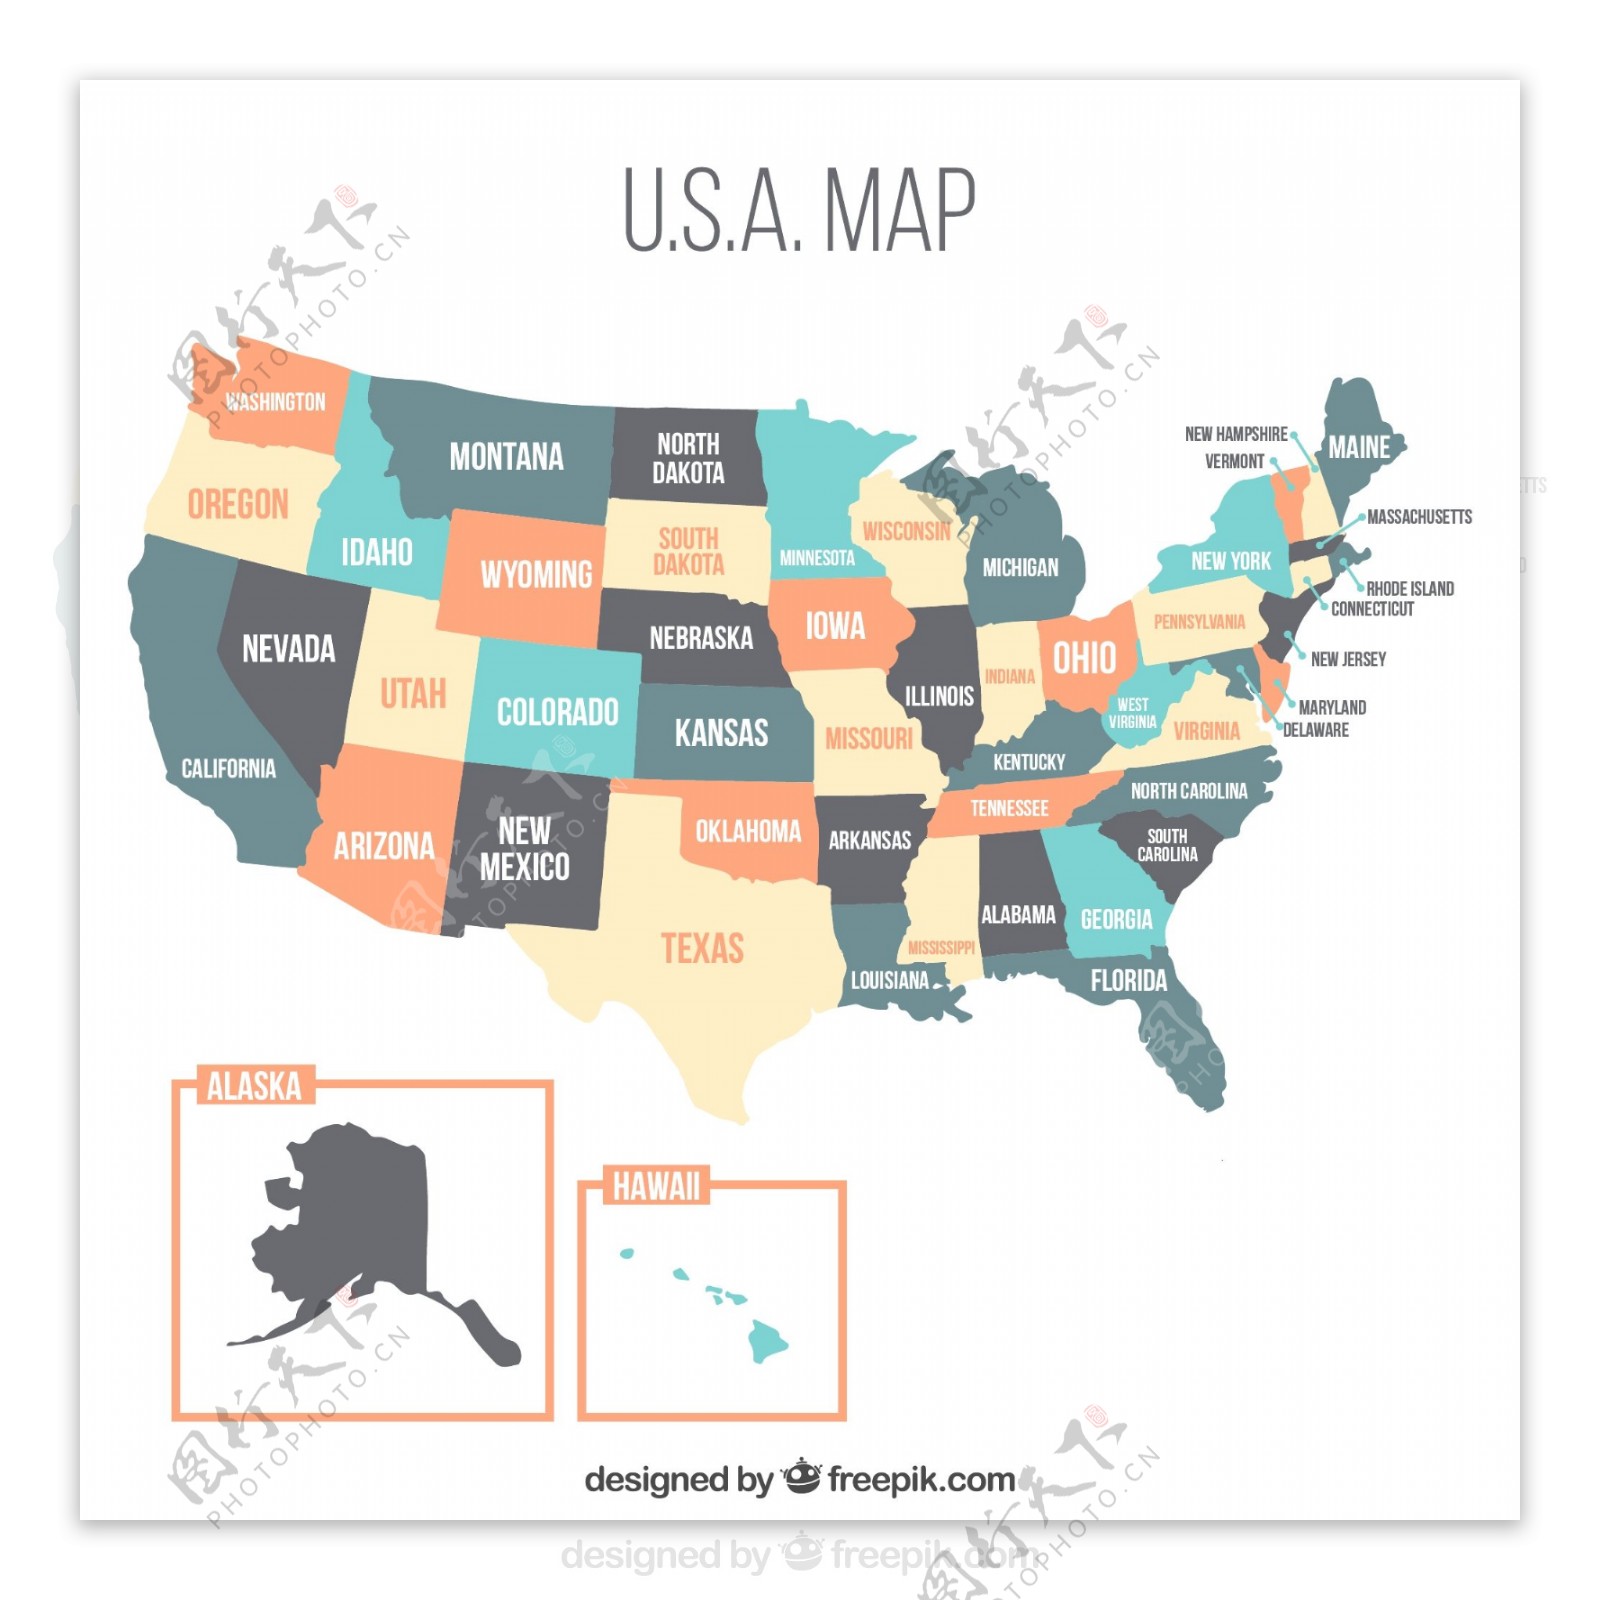 粉彩色美国地图设计矢量素材